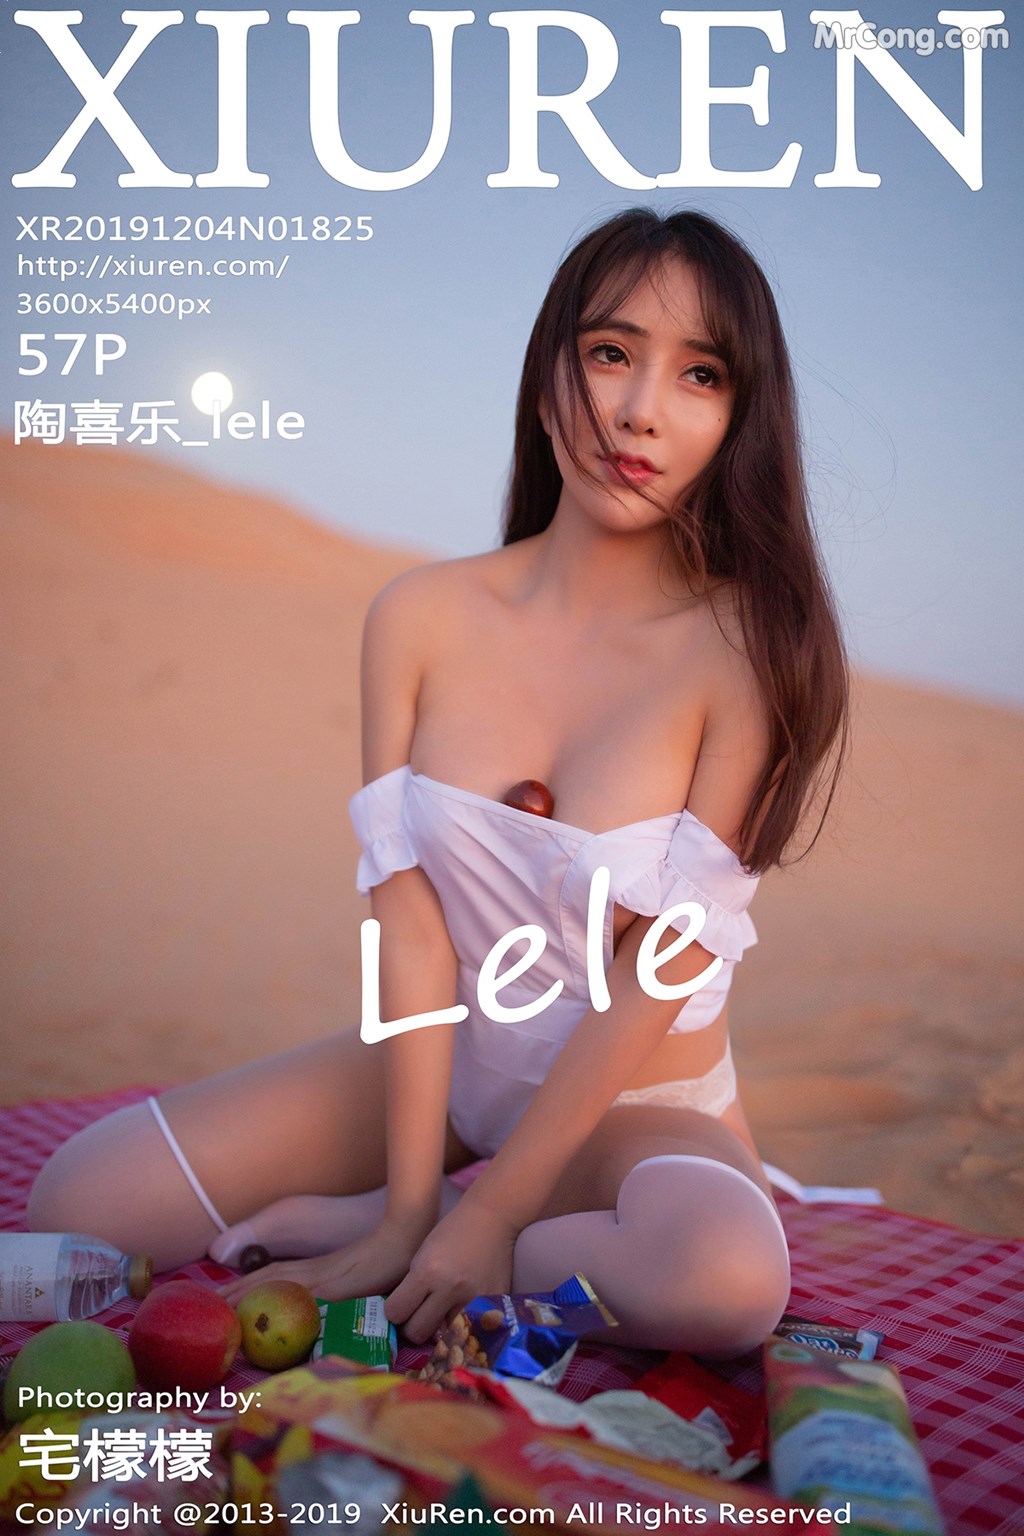 [XIUREN] No.1825 陶喜乐_lele Cover Photo